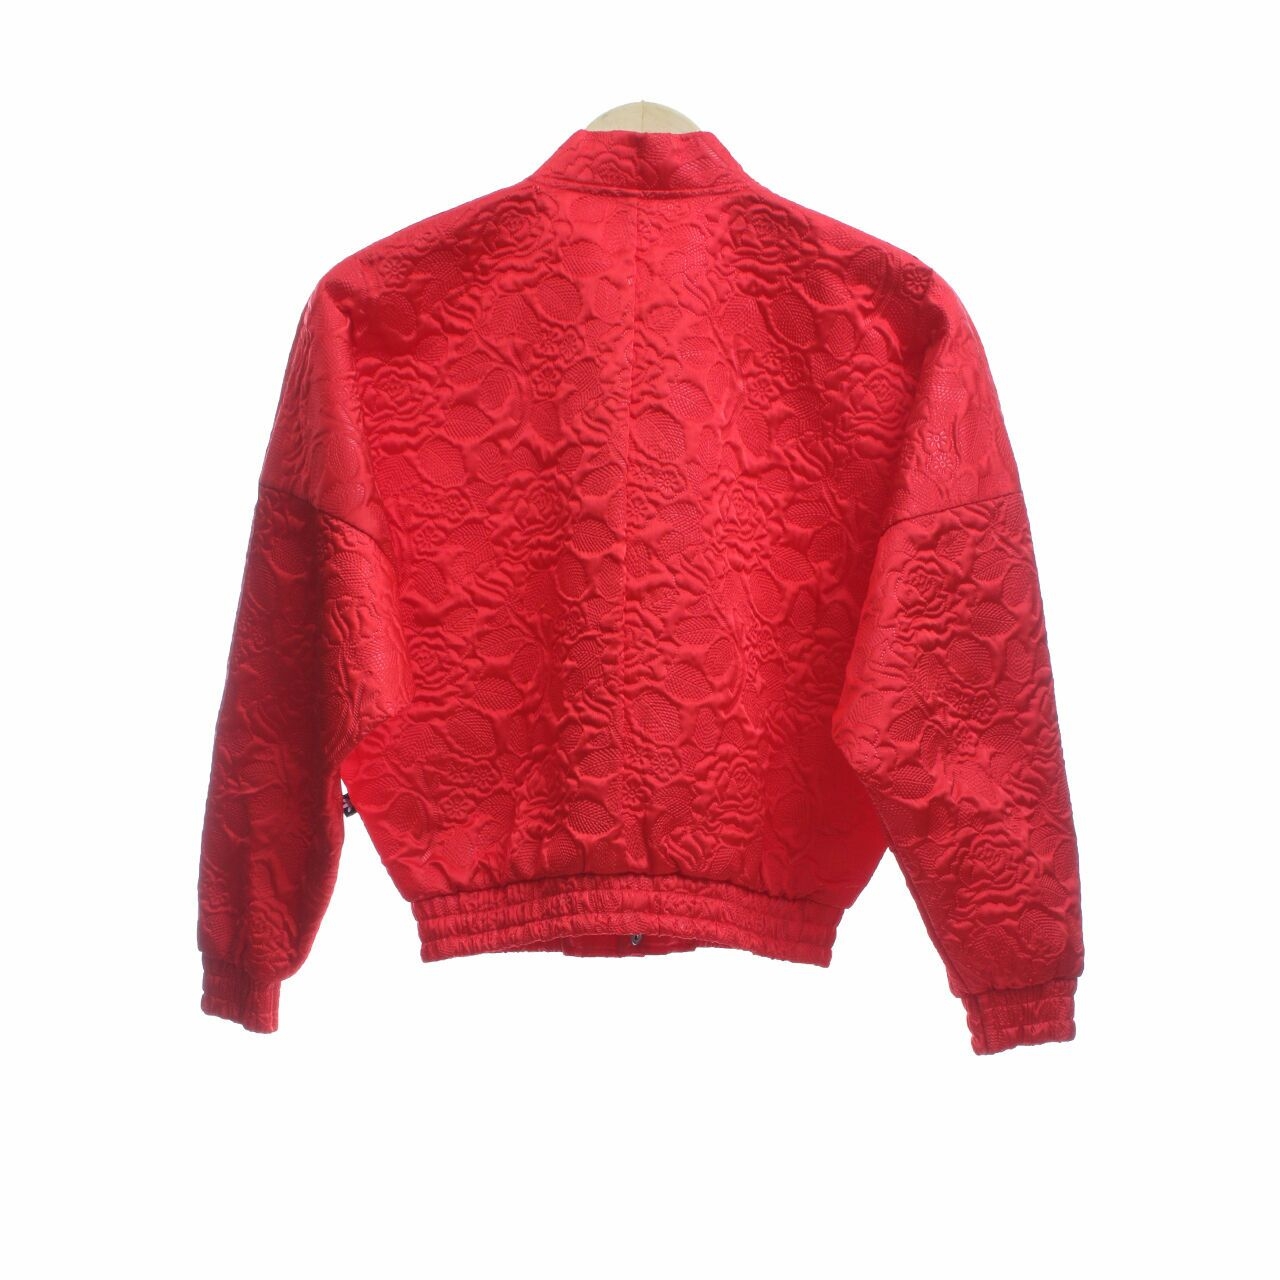 Adidas Red Jaket